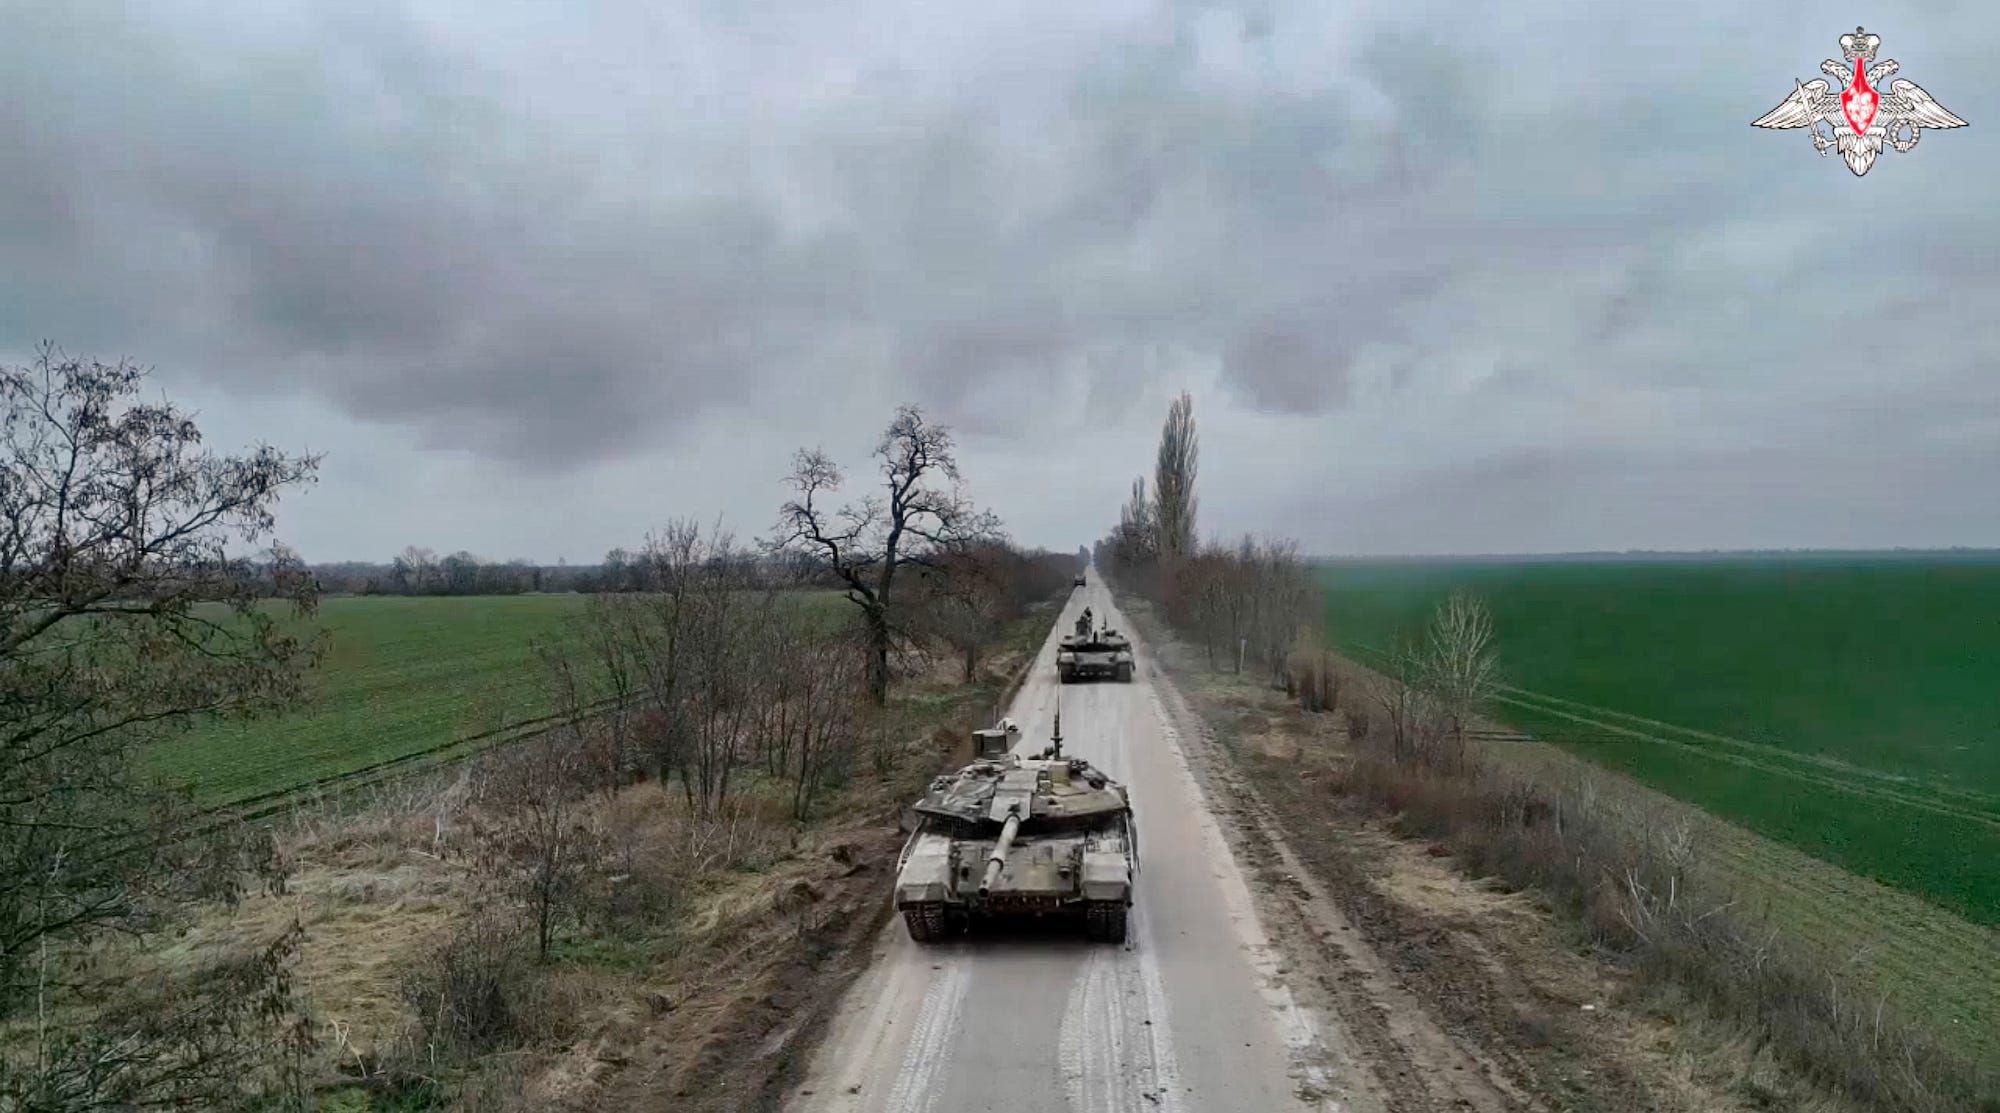 An einem grauen Tag wurden zwei russische T-90M-Panzer frontal an einem unbekannten ländlichen Ort in der Ukraine gesichtet.  Bild veröffentlicht vom Pressedienst des russischen Verteidigungsministeriums am 23. Januar 2023